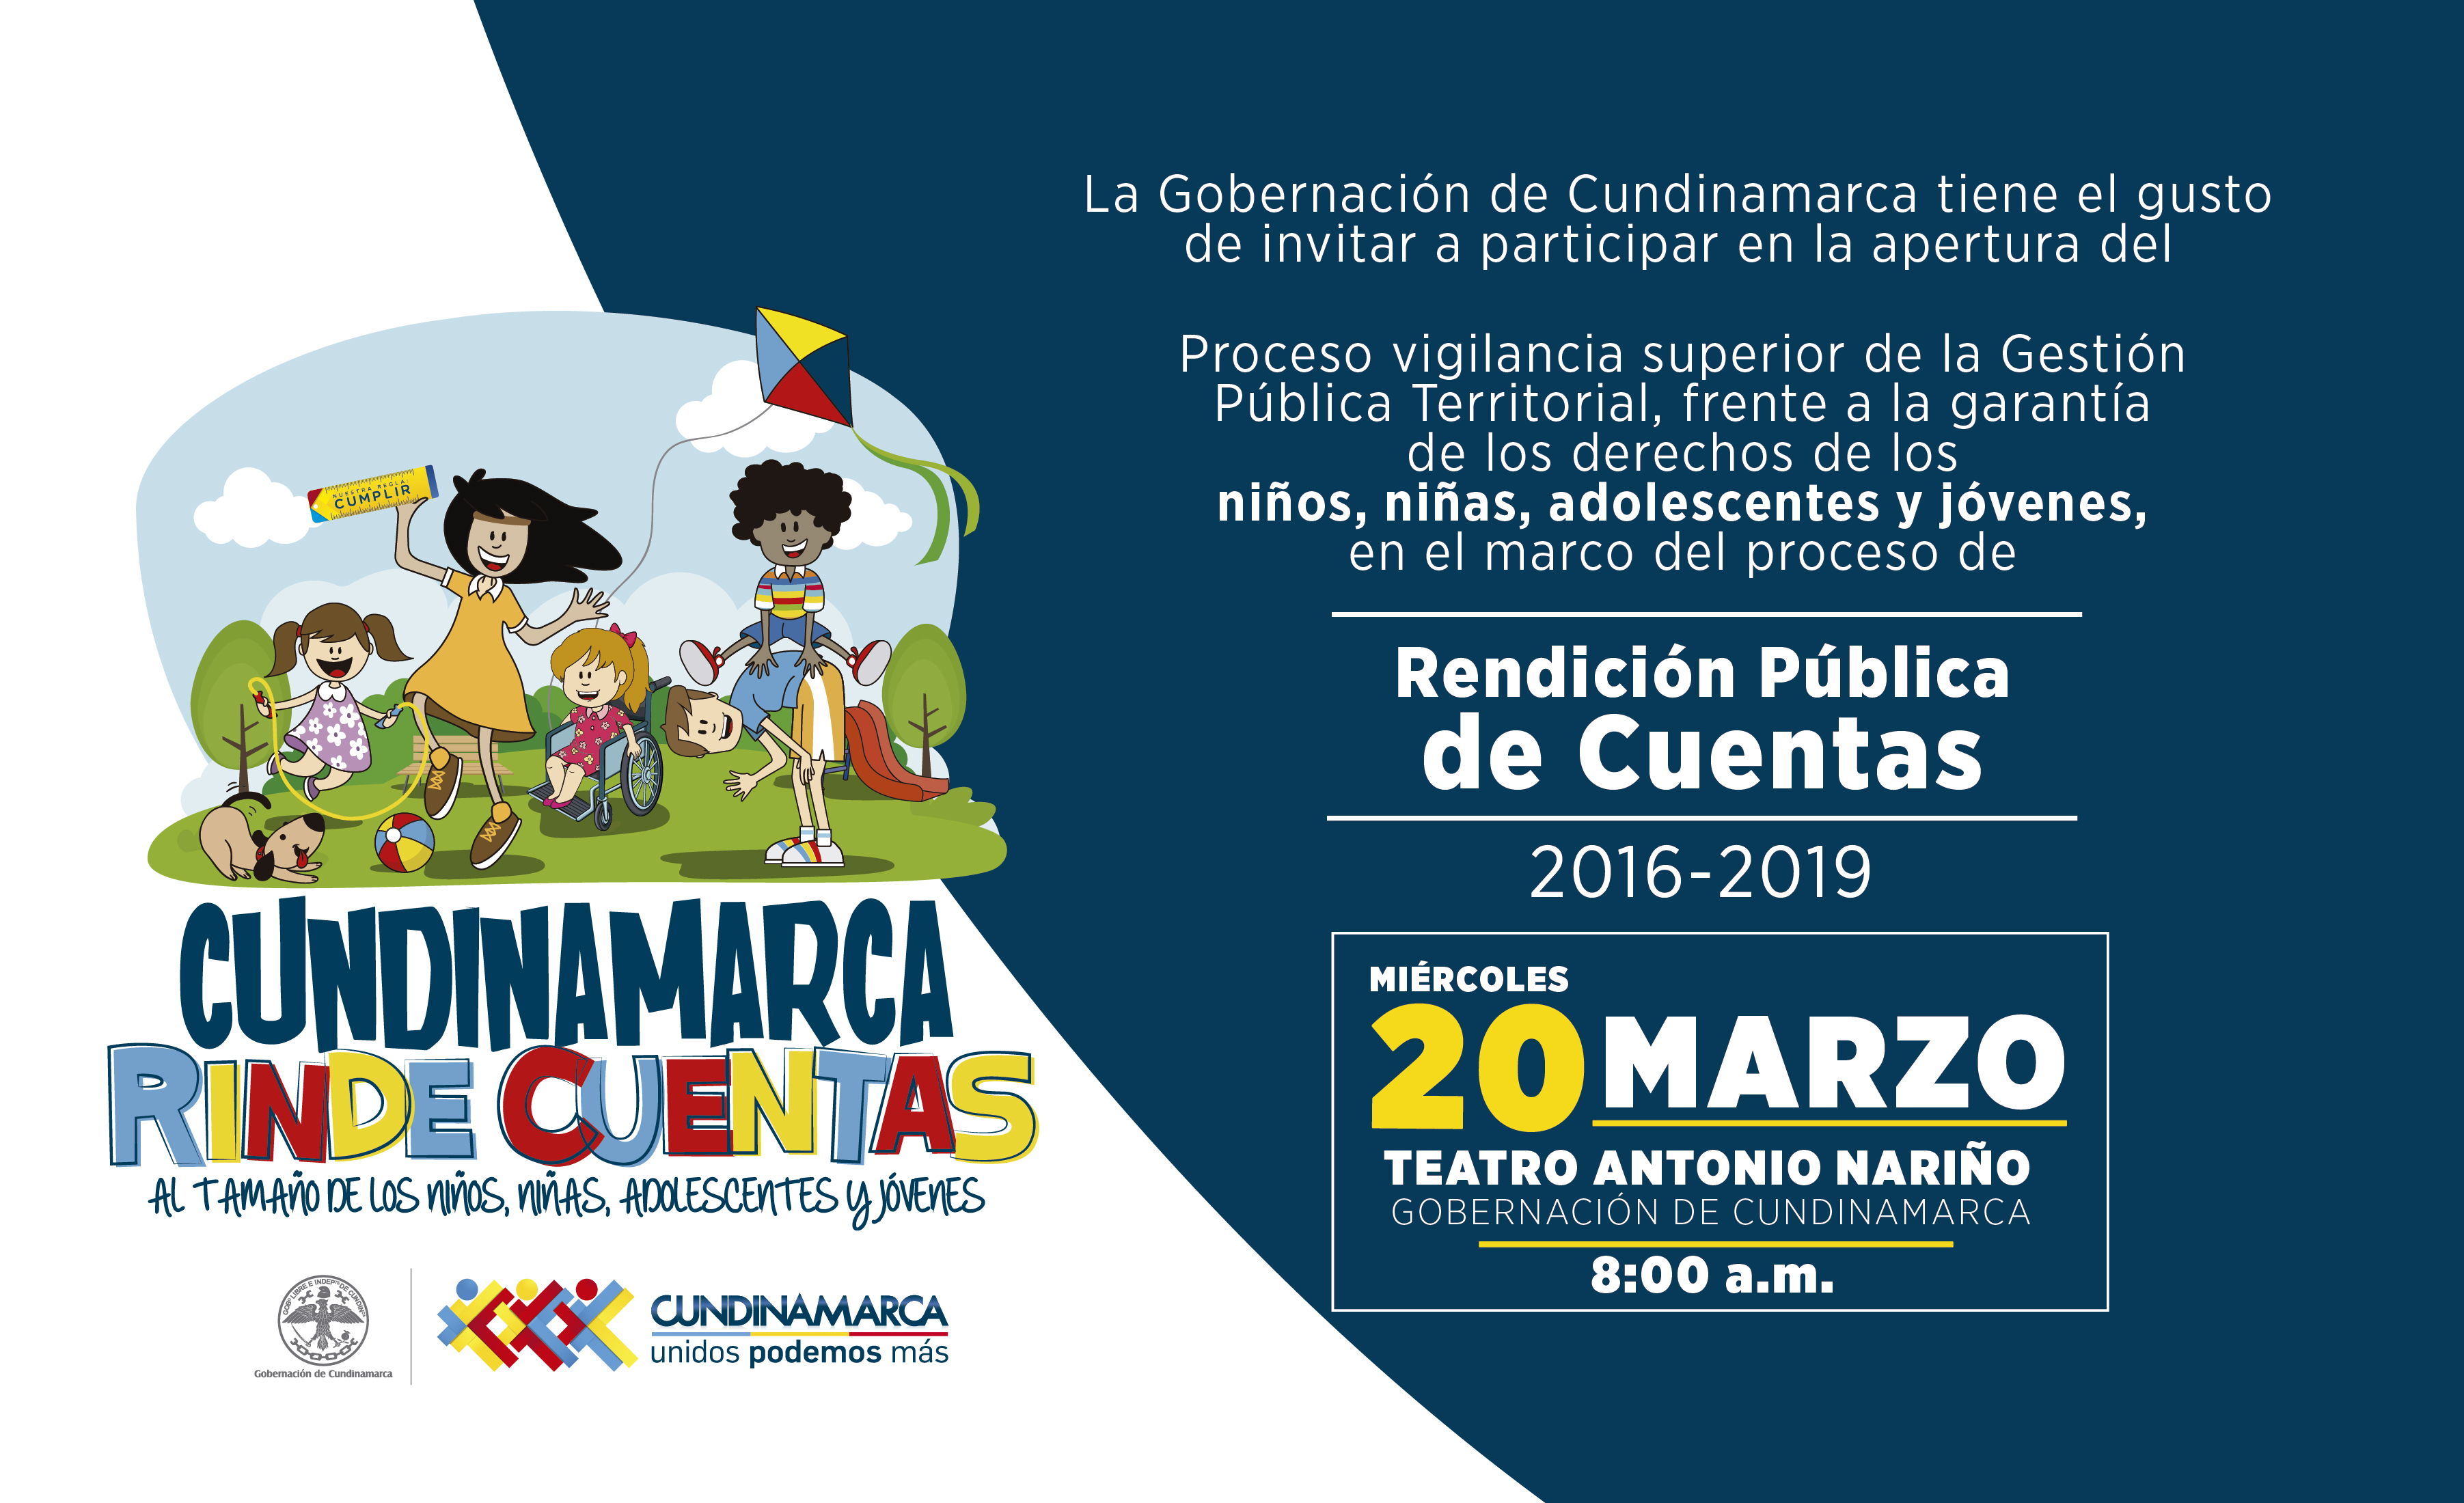 Cundinamarca, lista para rendir cuentas frente a la garantía de los derechos de niños, niñas, adolescentes y jóvenes





